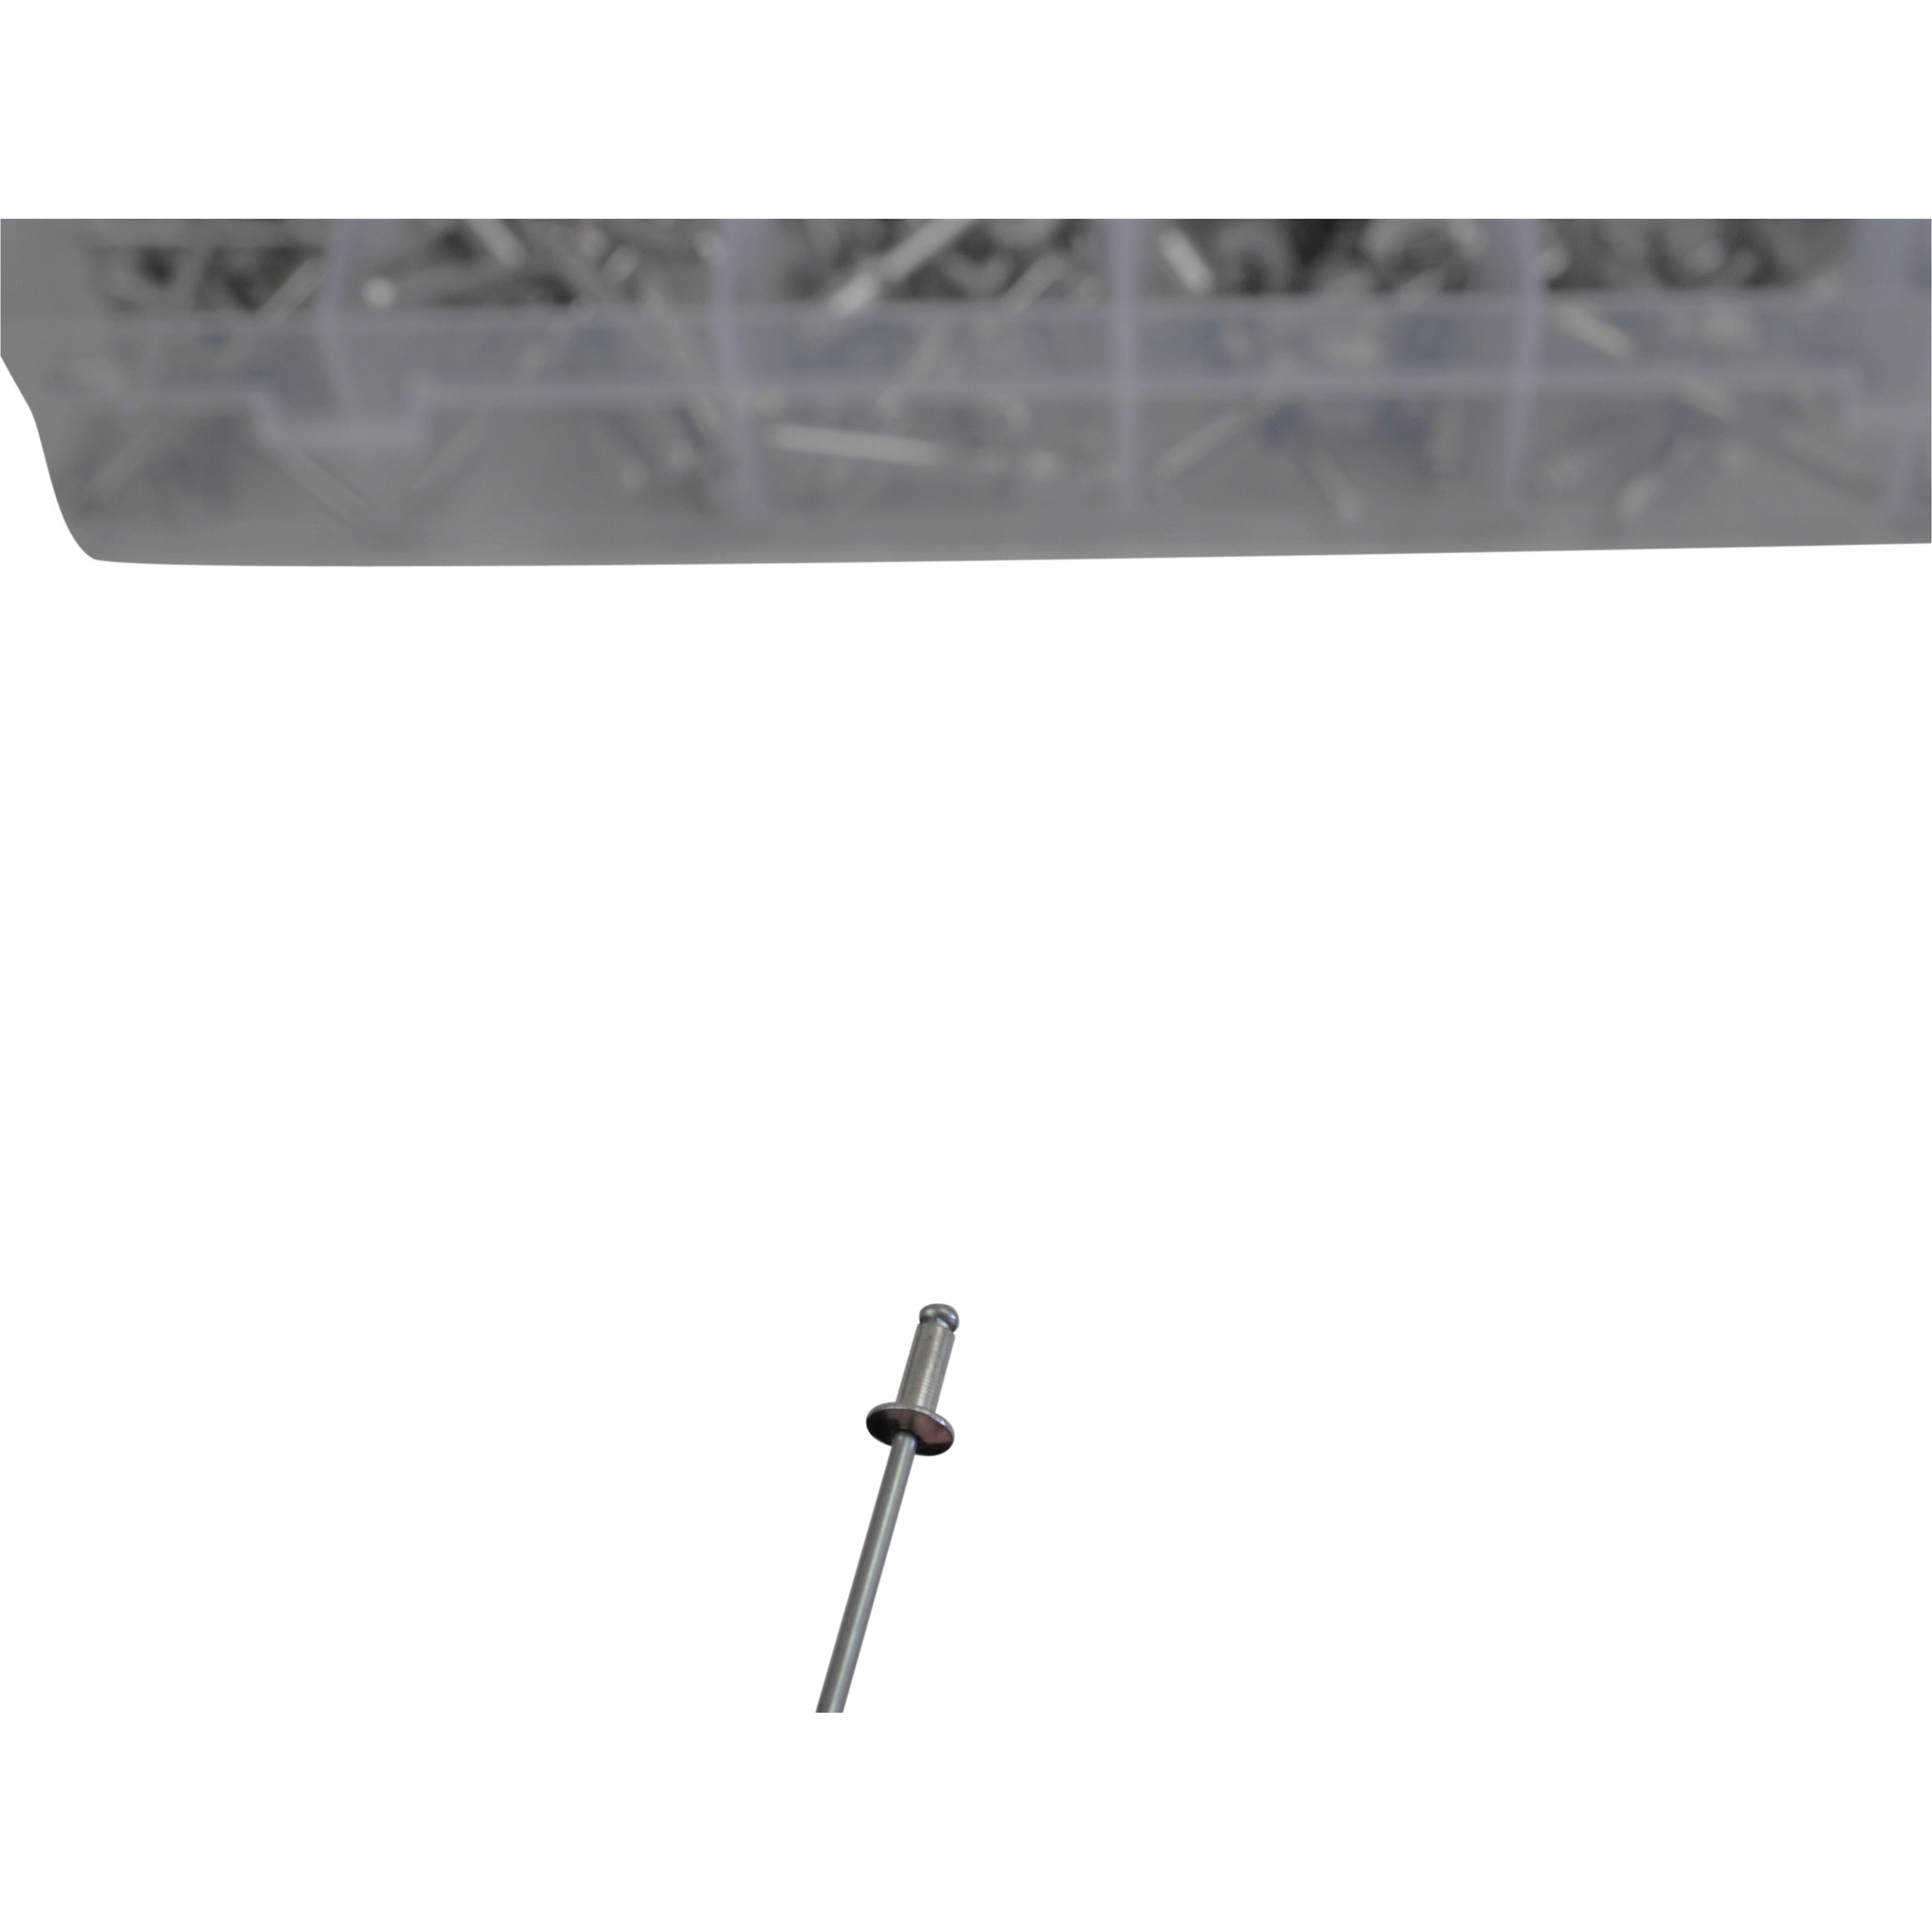 510 piece Aluminium Pop Rivet Grab Kit Assortment 6mm to 30mm stalk size  